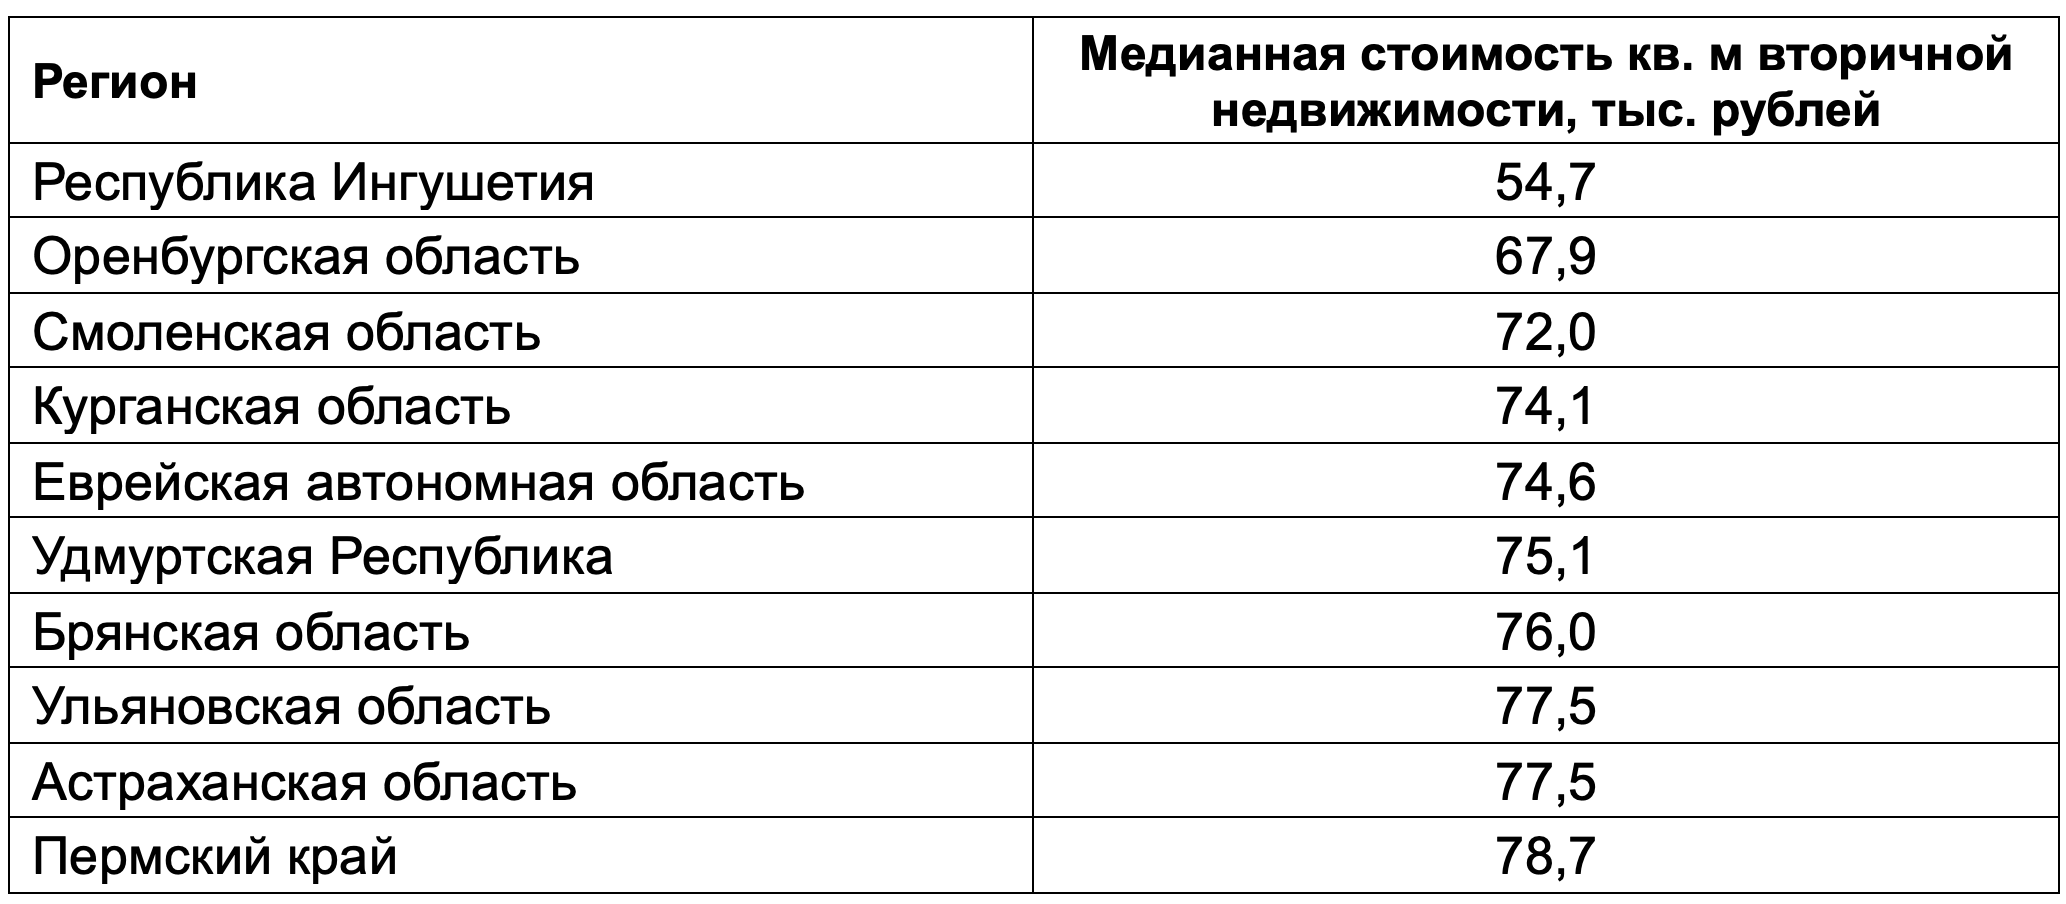 Топ-10 регионов России с наименьшей медианной стоимостью кв. м вторичного жилья. Данные Домклик на февраль 2024 года